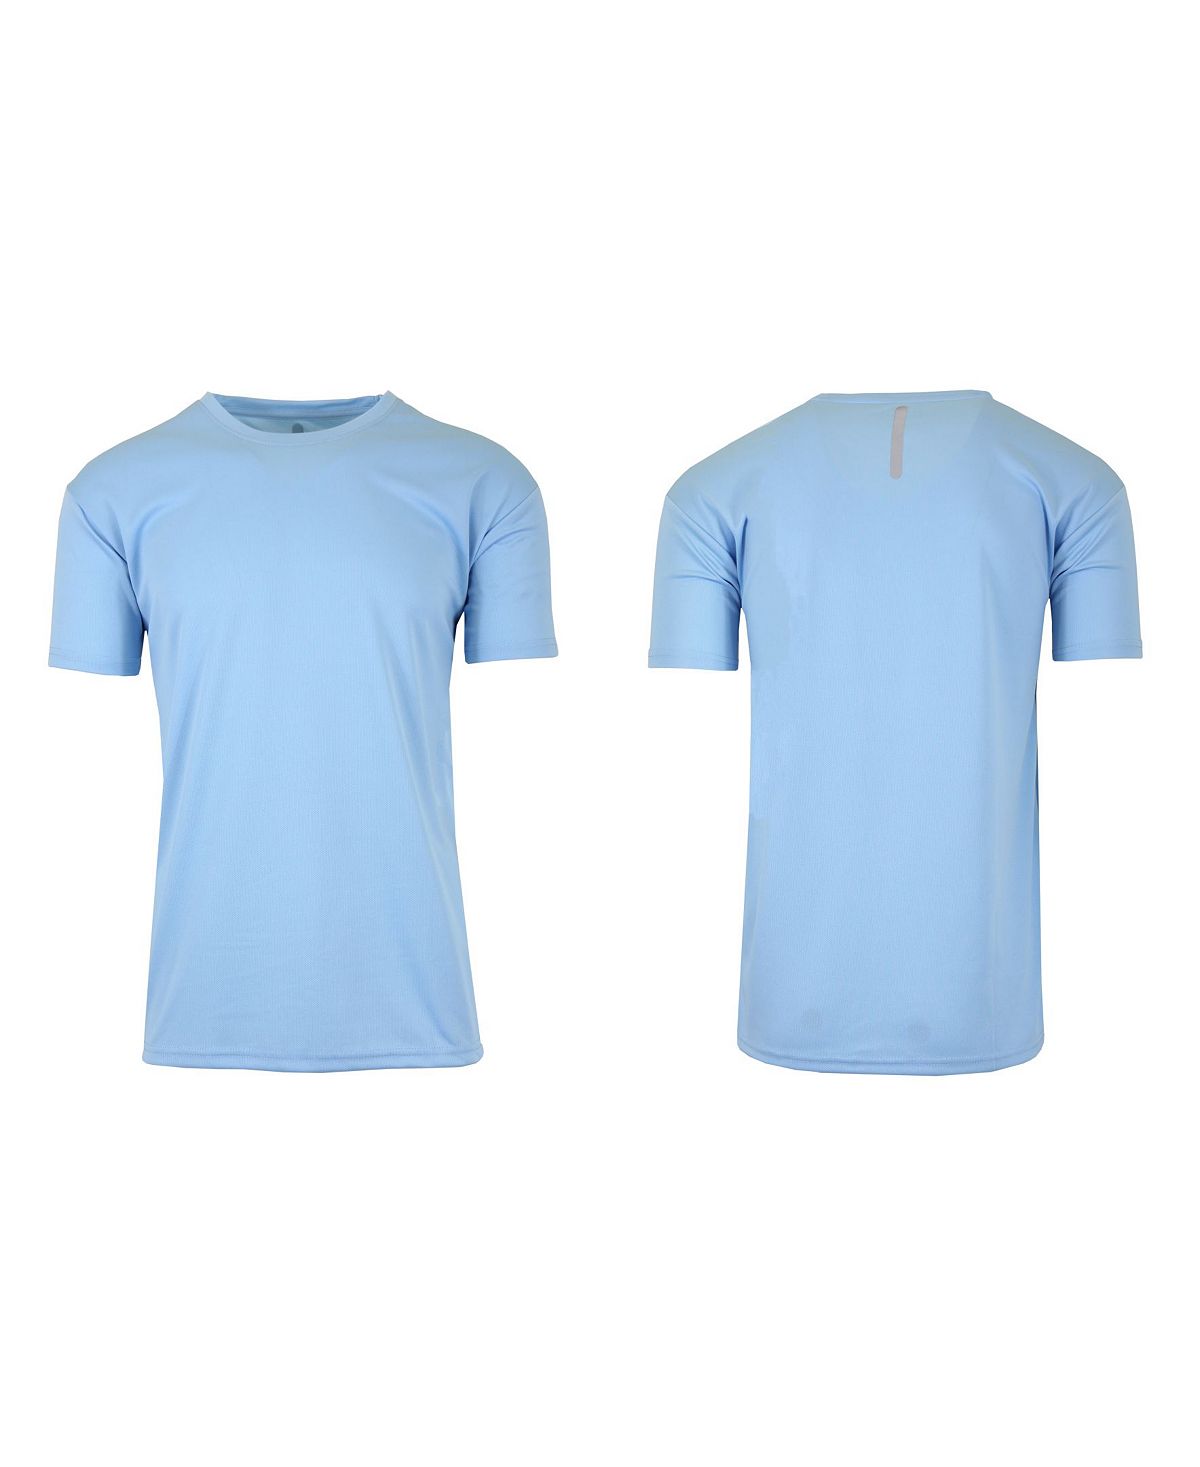 Мужская быстросохнущая влагоотводящая футболка с коротким рукавом Galaxy By Harvic, голубой